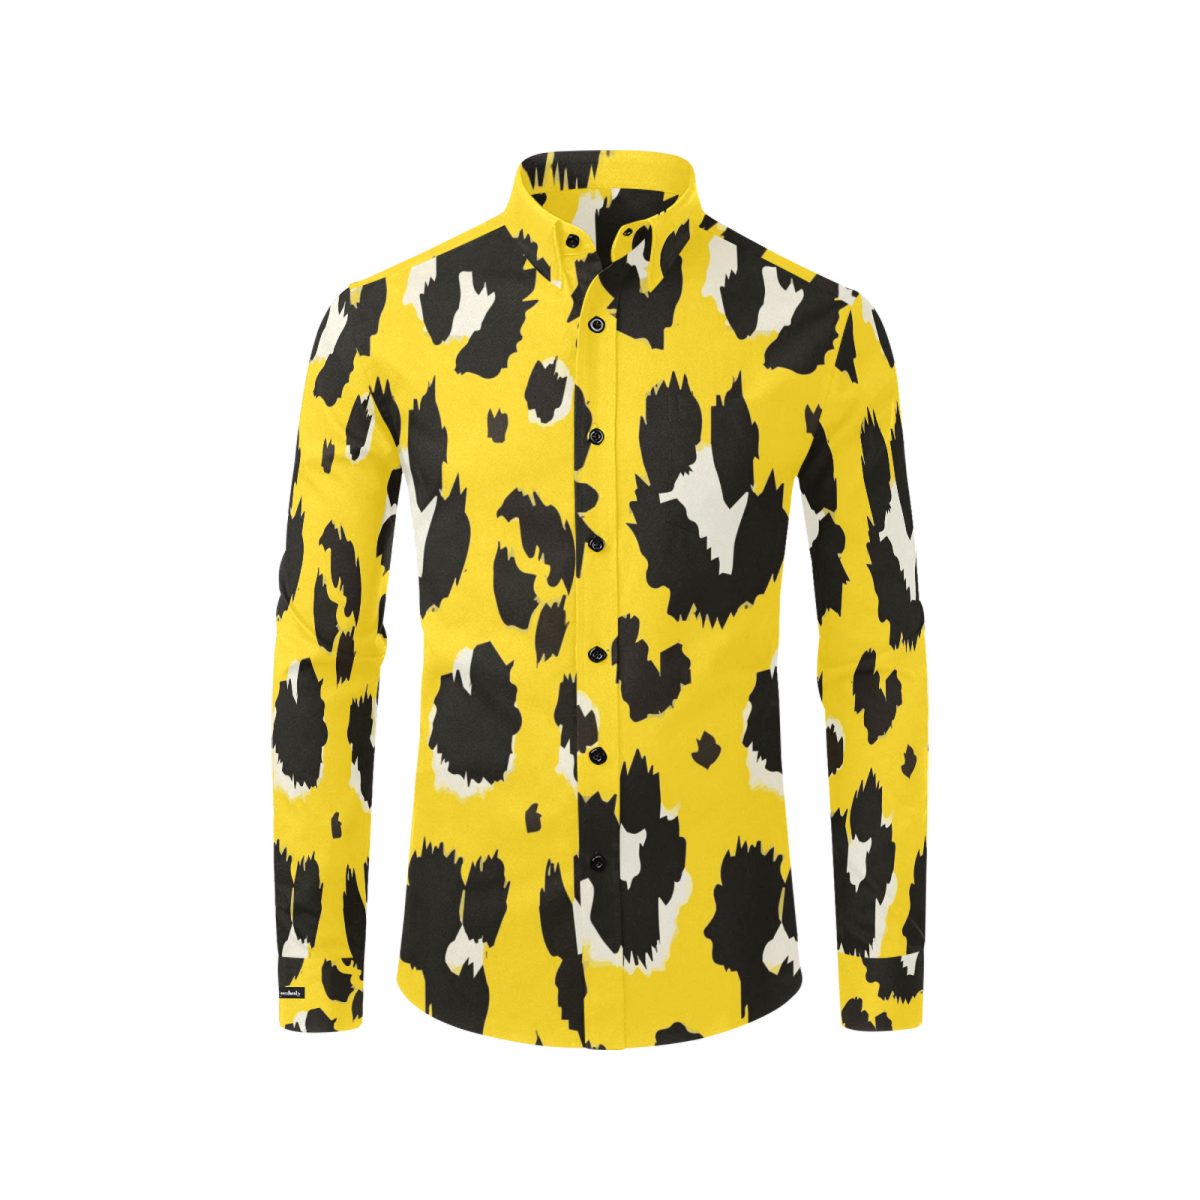 polo ralph lauren short sleeve button up | h&m button up shirt